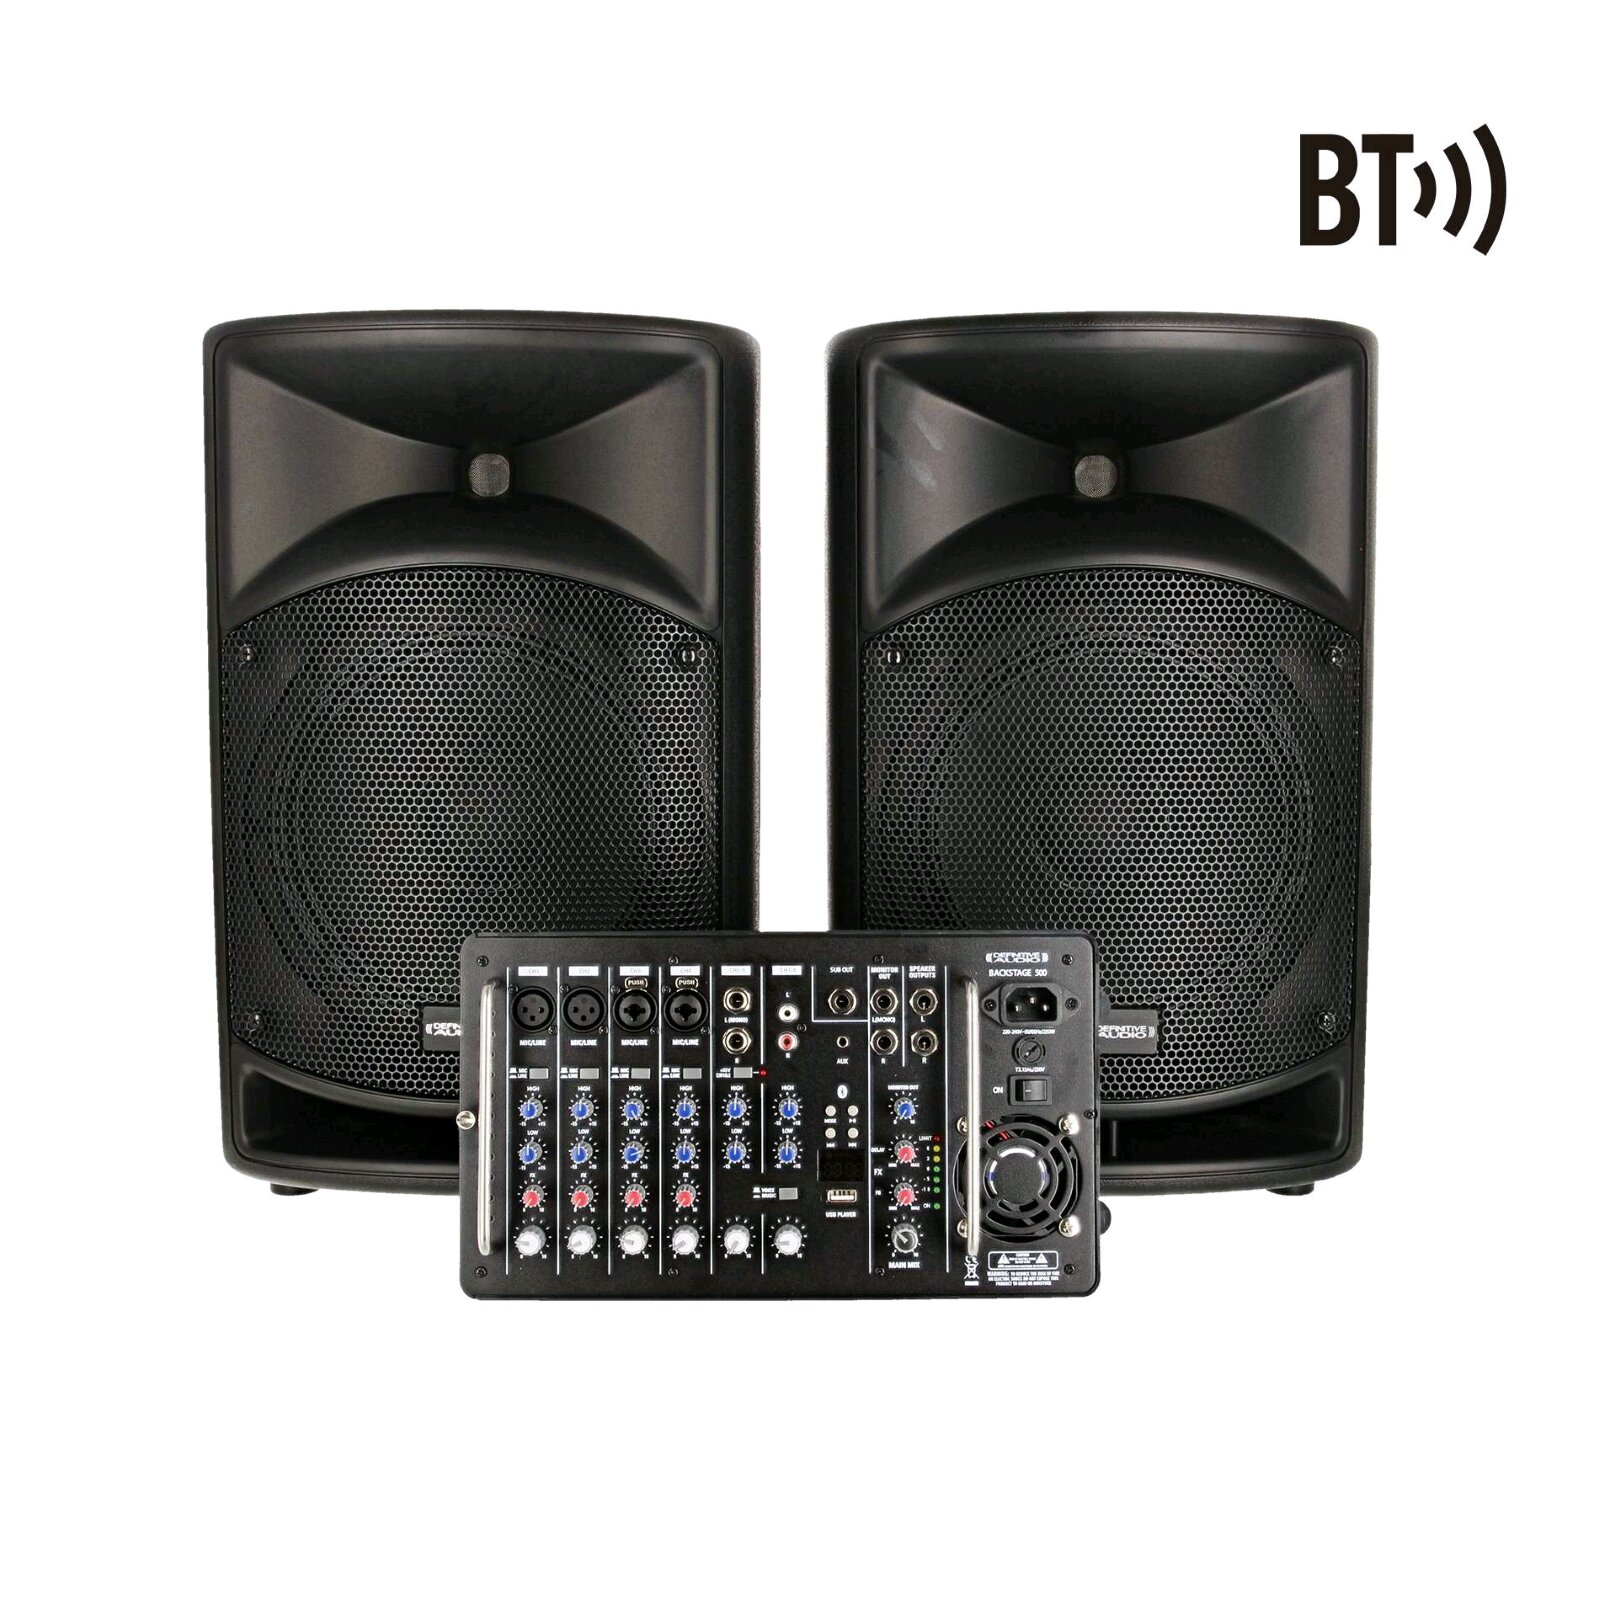 Definitive Audio Système amplifié avec mixer 500W RMS (BACKSTAGE 500) : photo 1